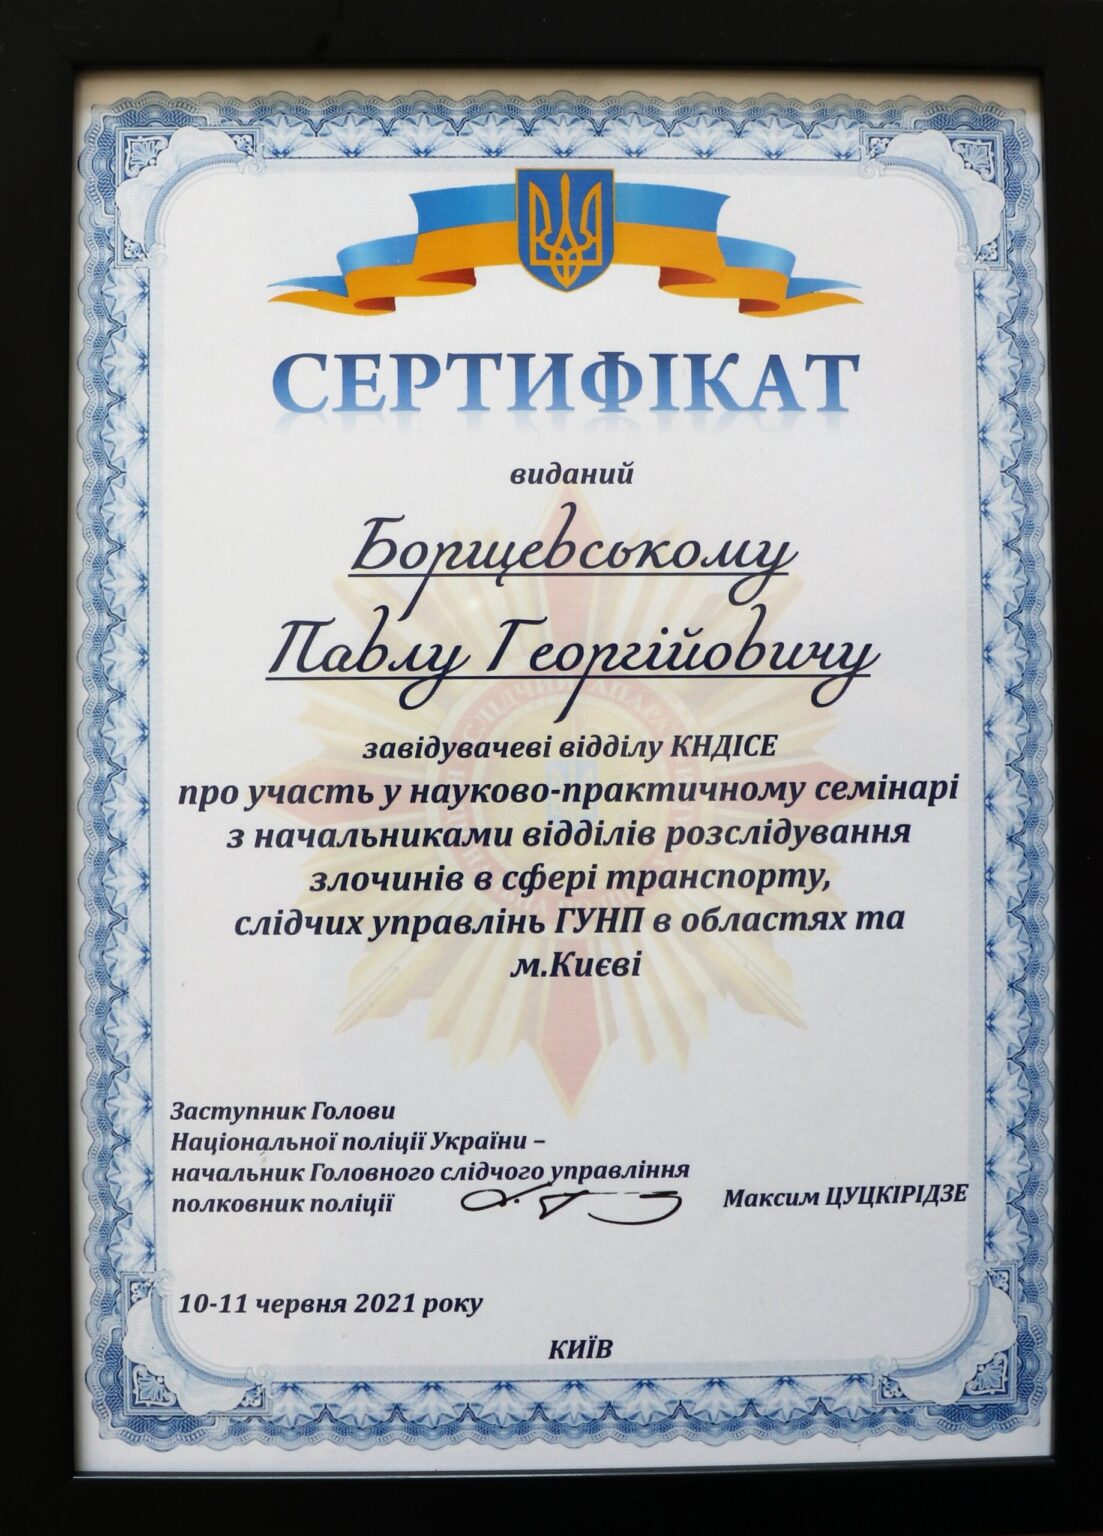 Експерти КНДІСЕ провели лекційні заняття для працівників Національної поліції України